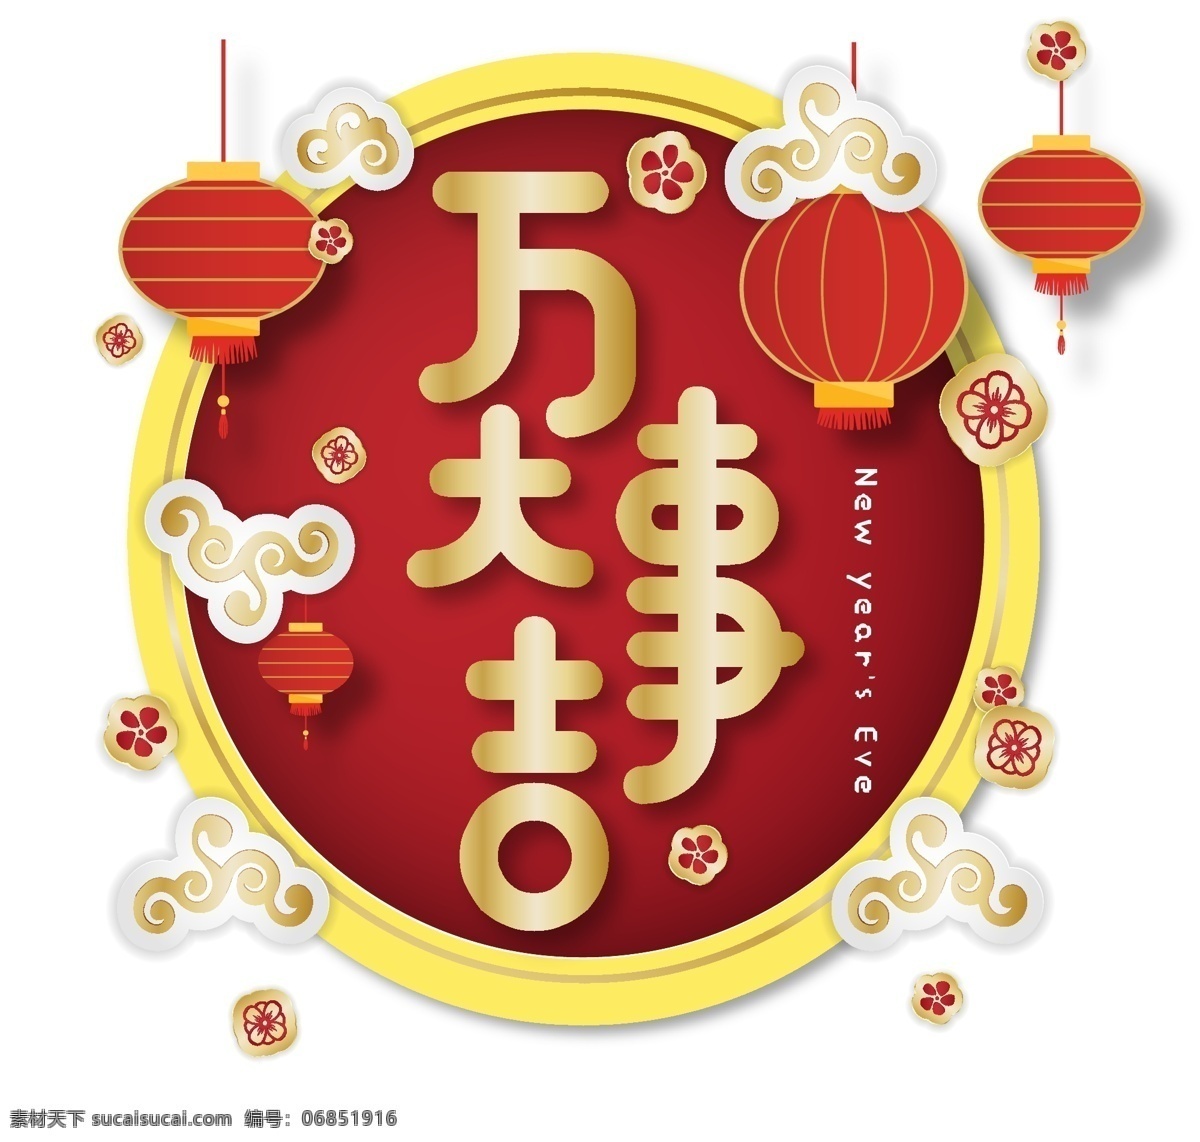 新年 万事大吉 创意 中 国风 字体 艺术 字 新年素材 创意字体 海报字体 2019 中国风字体 艺术字 新春字体 春 祝福语 新年祝福